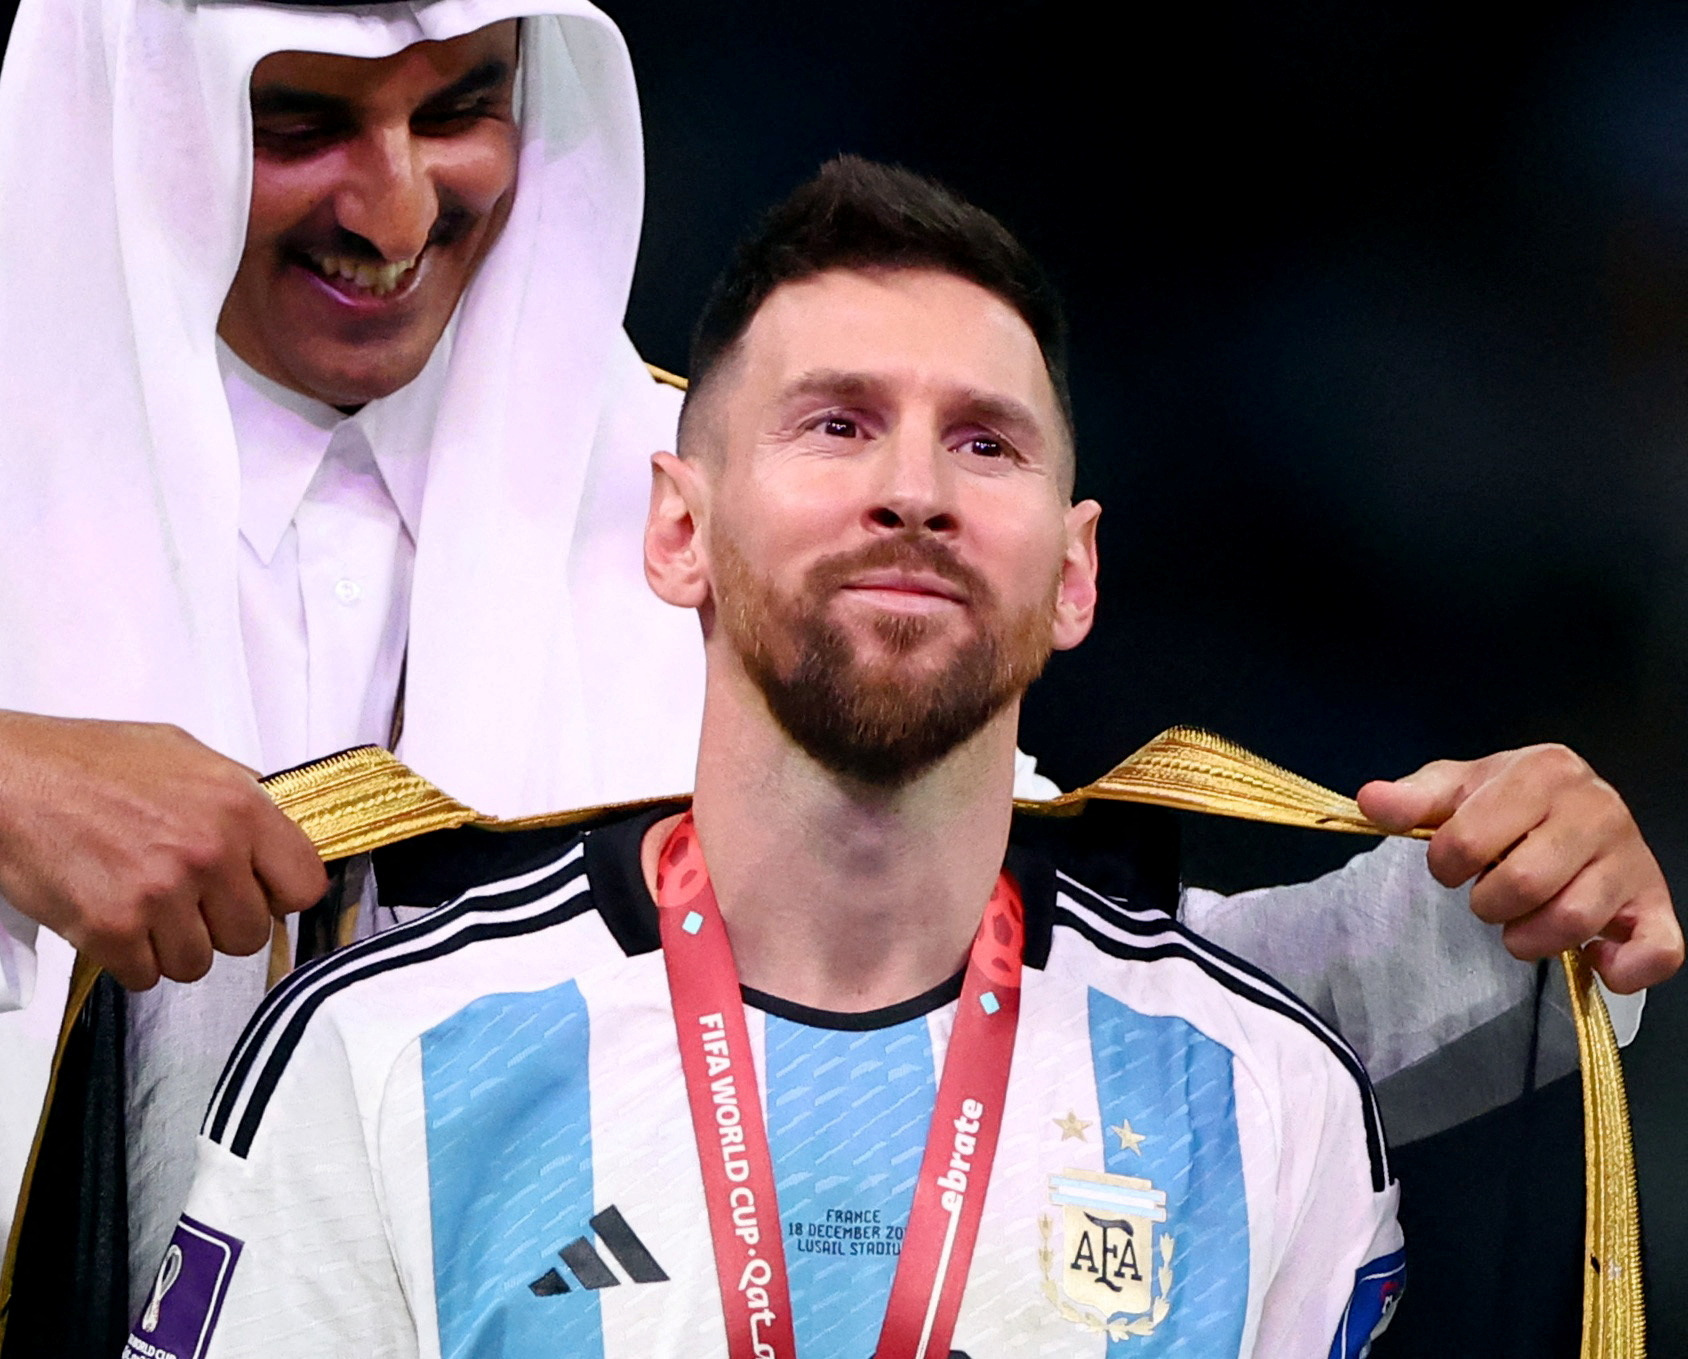 Áo choàng Messi là một trong những thiết kế đẹp nhất được ưa chuộng bởi những người đam mê bóng đá. Hãy xem những hình ảnh đầy phong cách này để trang trí cho ngoại hình của bạn và khoe đến mọi người rằng bạn là một fan cuồng của Messi.